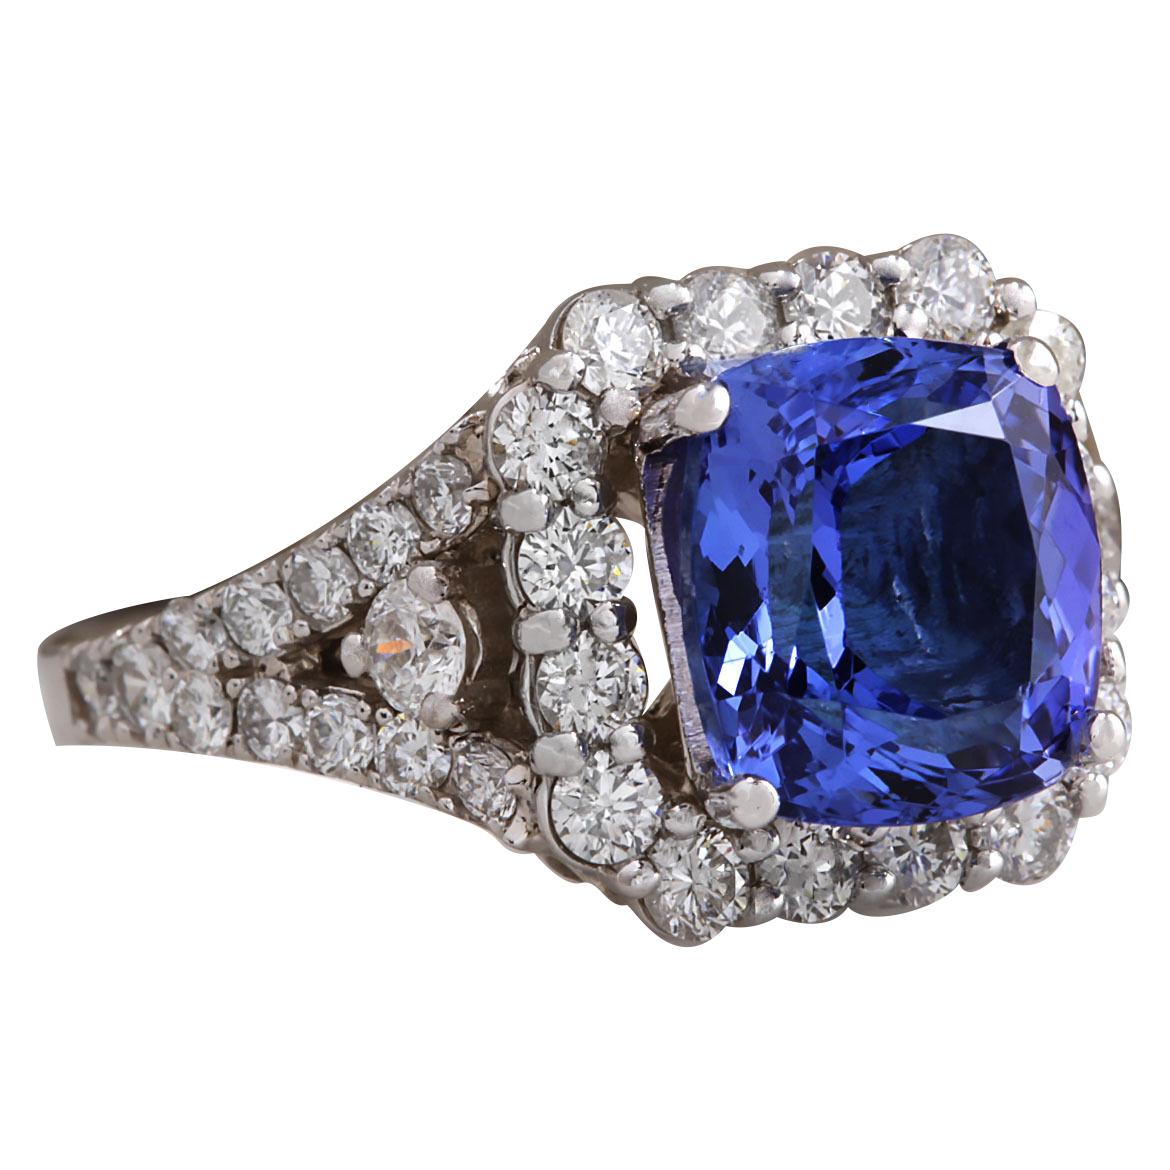 4.89 Carat Natural Tanzanite 14 Karat White Gold Diamond Ring
Stamped: 14K White Gold
Total Ring Weight: 6.0 Grams
Total Natural Tanzanite Weight is 3.76 Carat (Measures: 9.50x8.50 mm)
Color: Blue
Total Natural Diamond Weight is 1.13 Carat
Color: